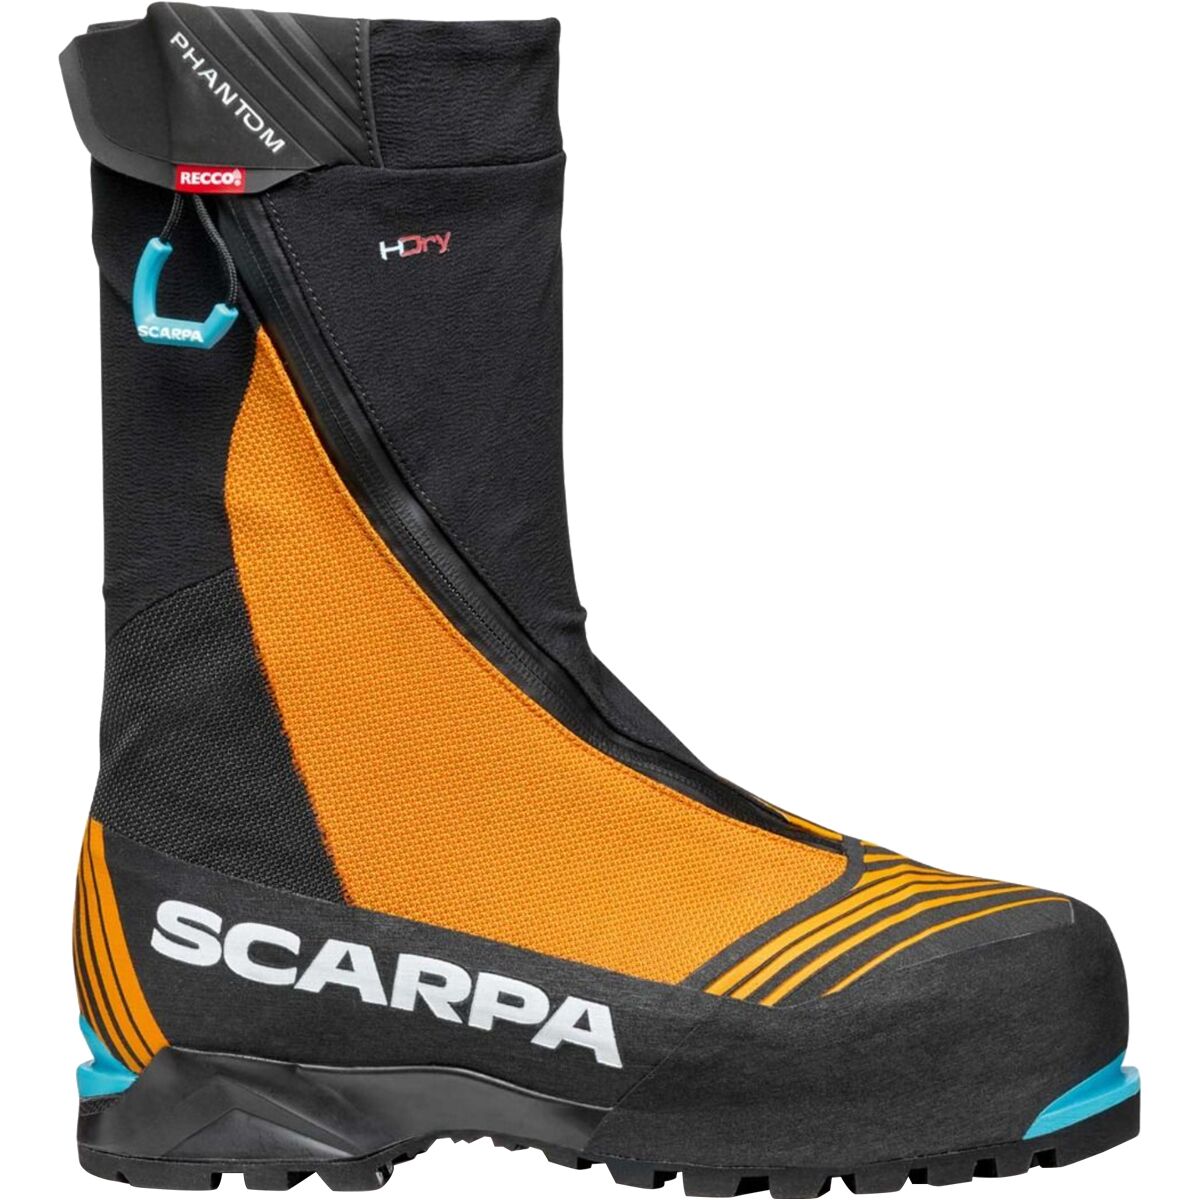 Pre-owned Scarpa Phantom 6000 Hd Mountaineering Boot In Black/orange